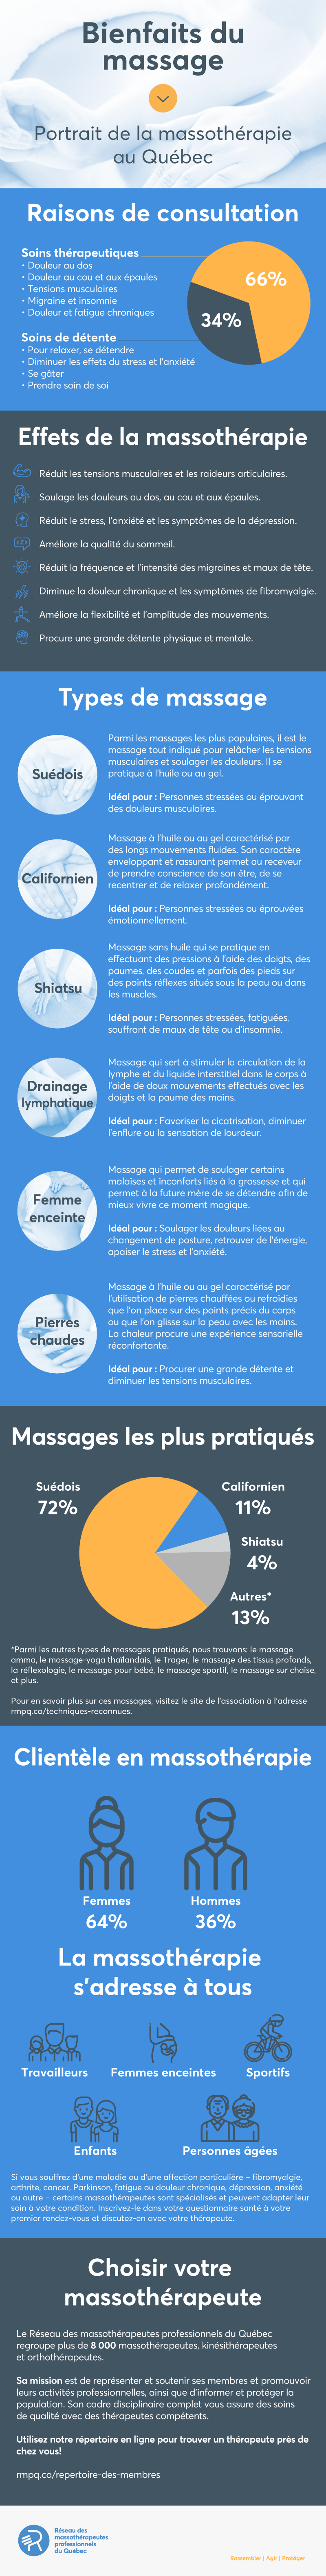 Infographie bienfaits du massage